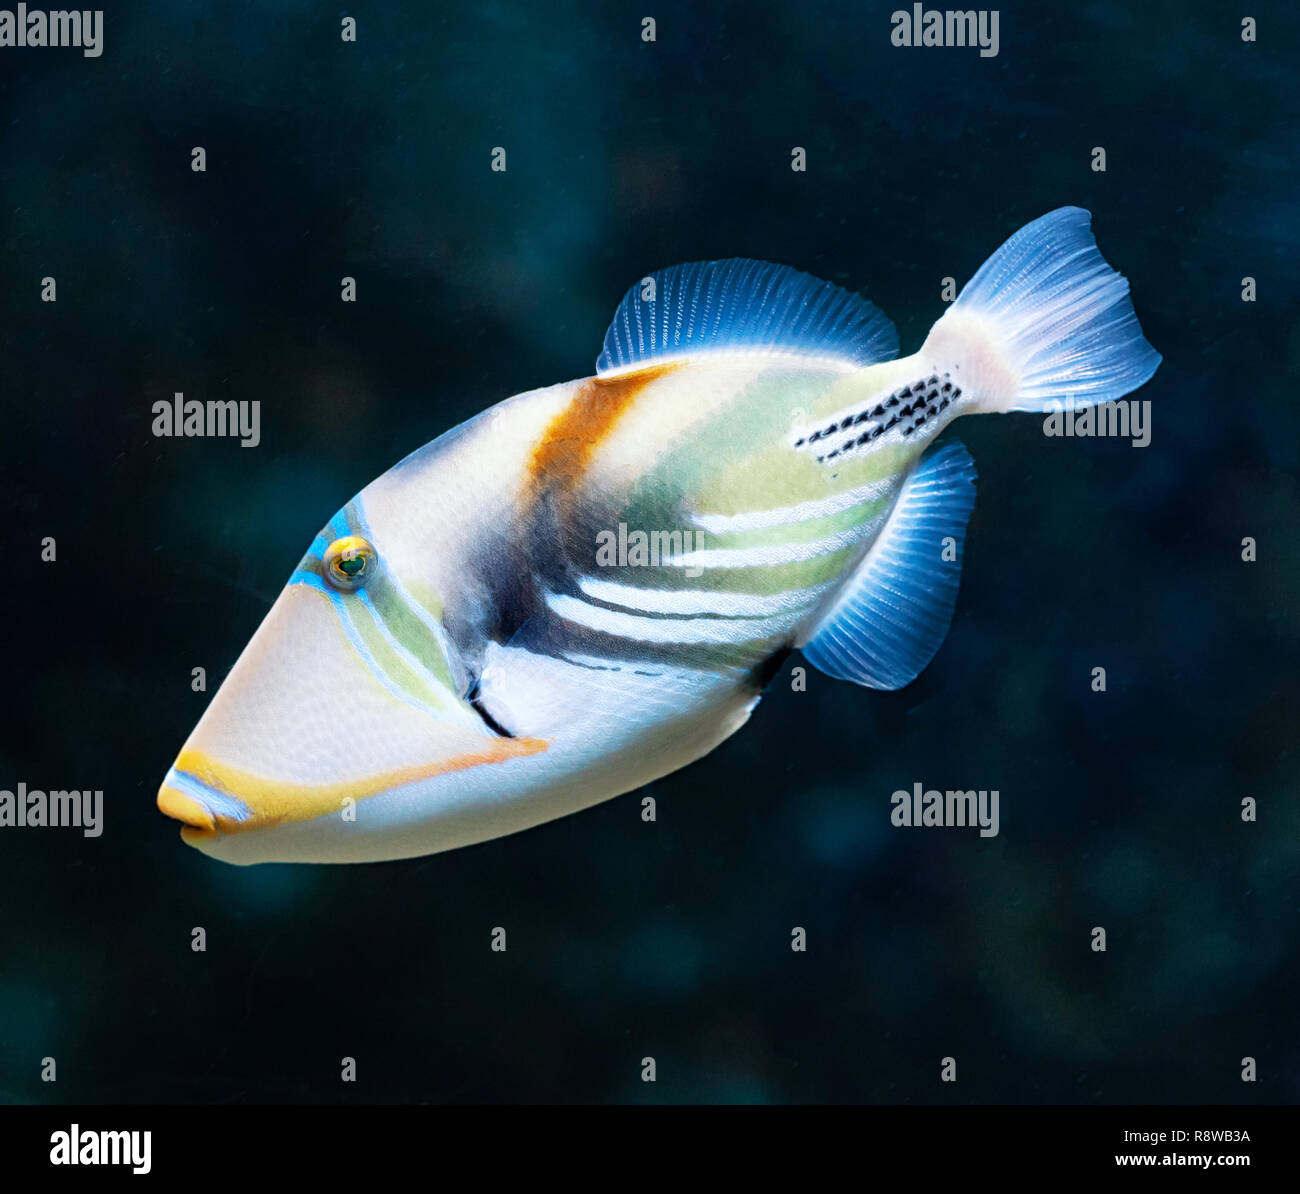 Laguna pesci balestra (Rhinecanthus aculeatus), noto anche come il Picasso triggerfish. Sea Life. Foto Stock